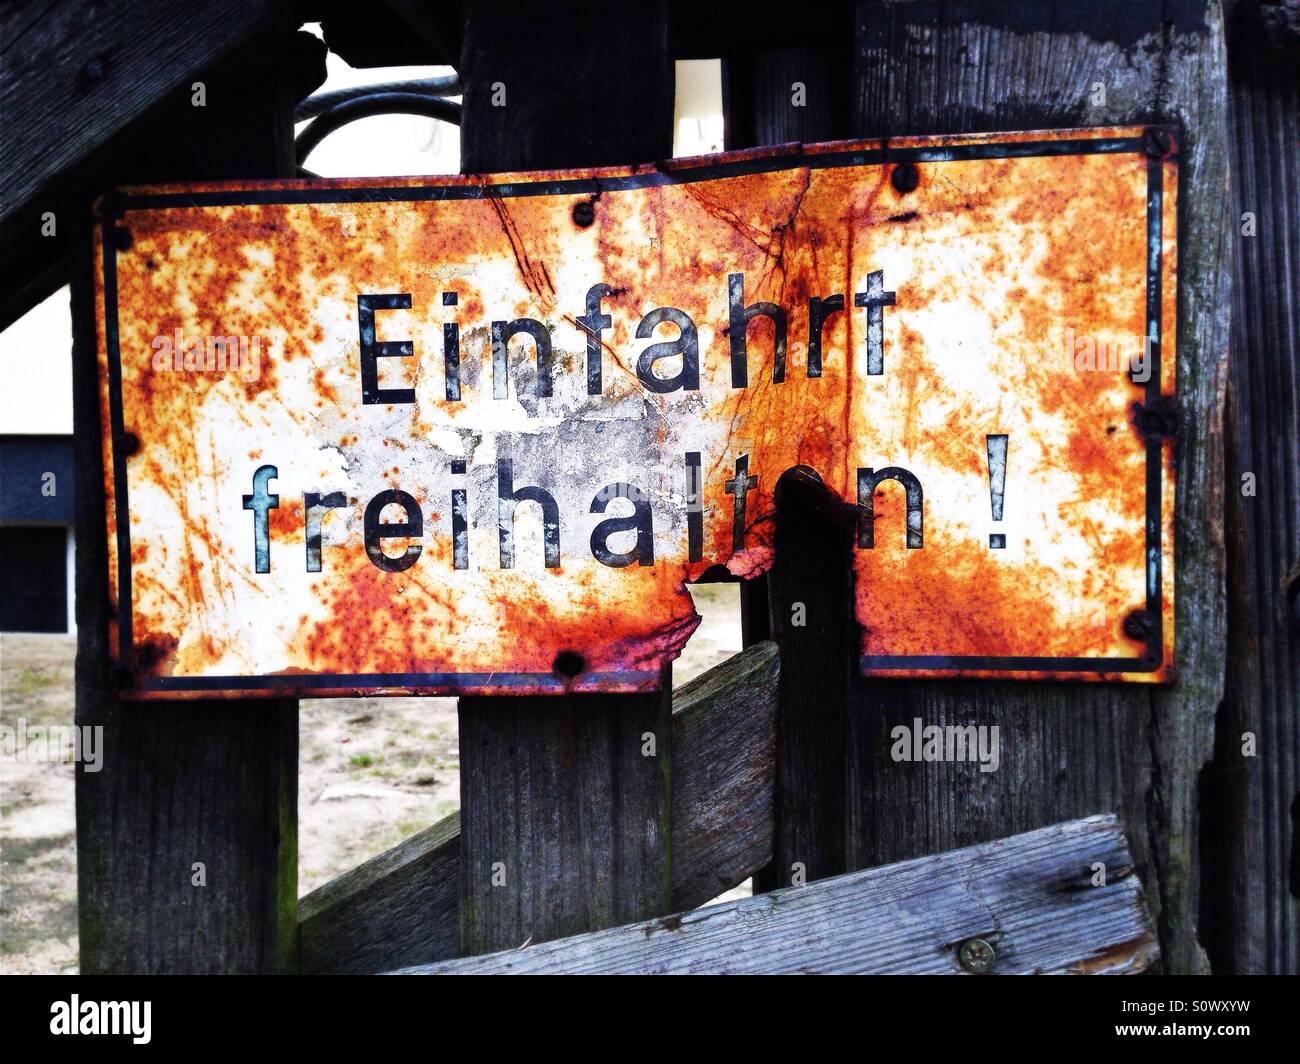 Einfahrt freihalten signe sur une clôture en Allemagne, traduction : garder l'allée clair Banque D'Images